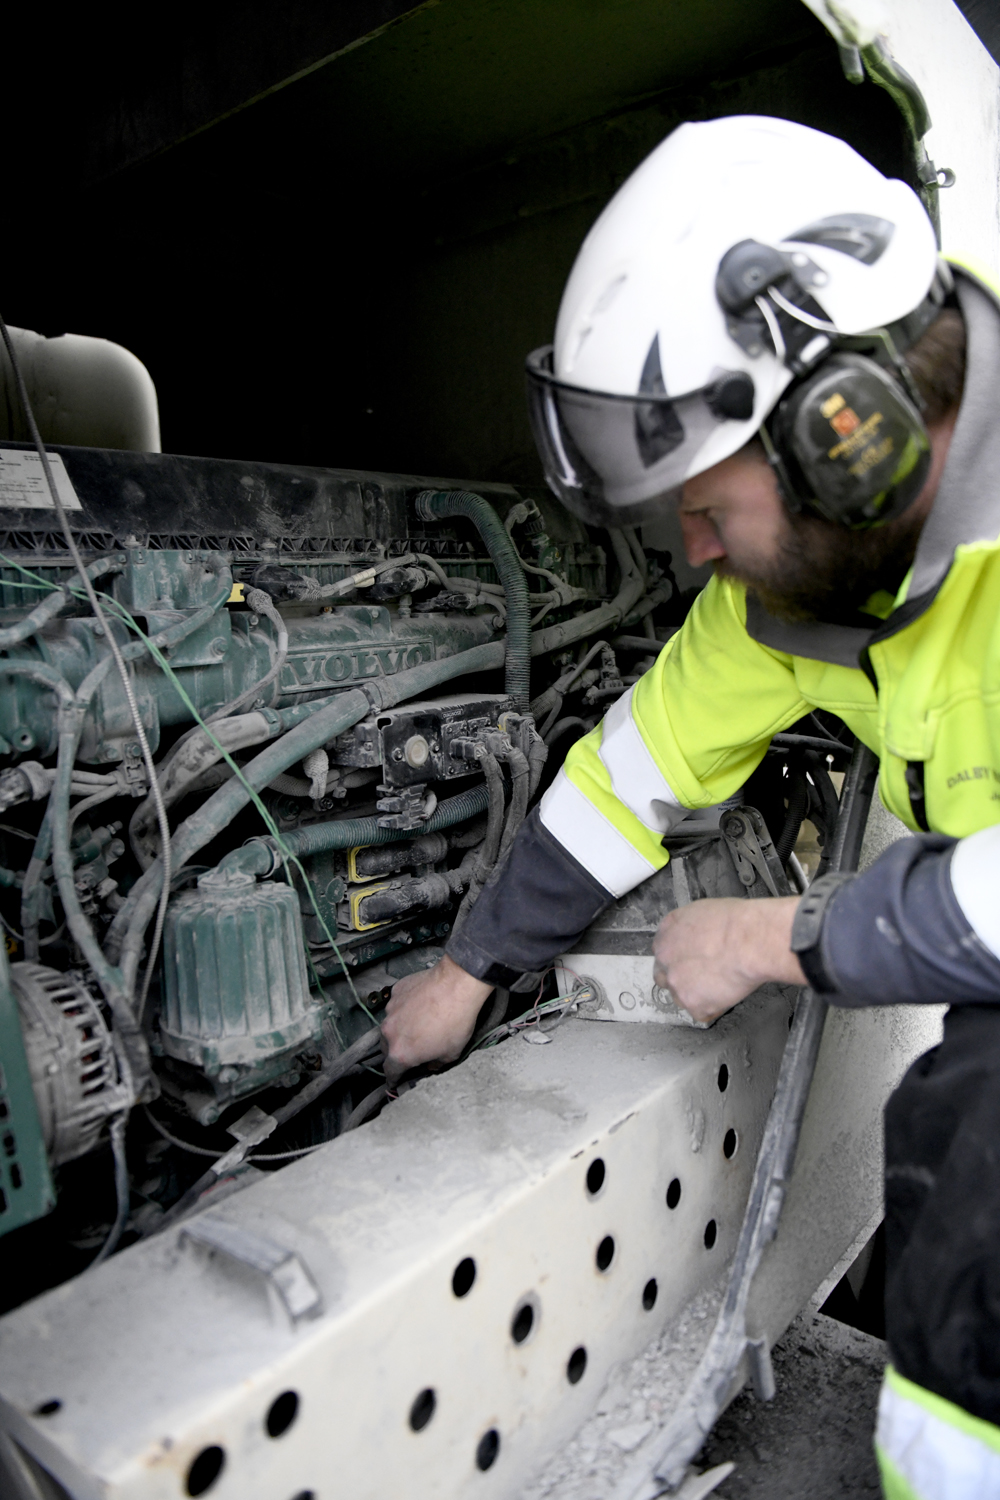 Jesper Sundström checks the D13 Stage V Volvo Penta engine on Dalby Maskin’s Metso Lokotrack mobile crusher